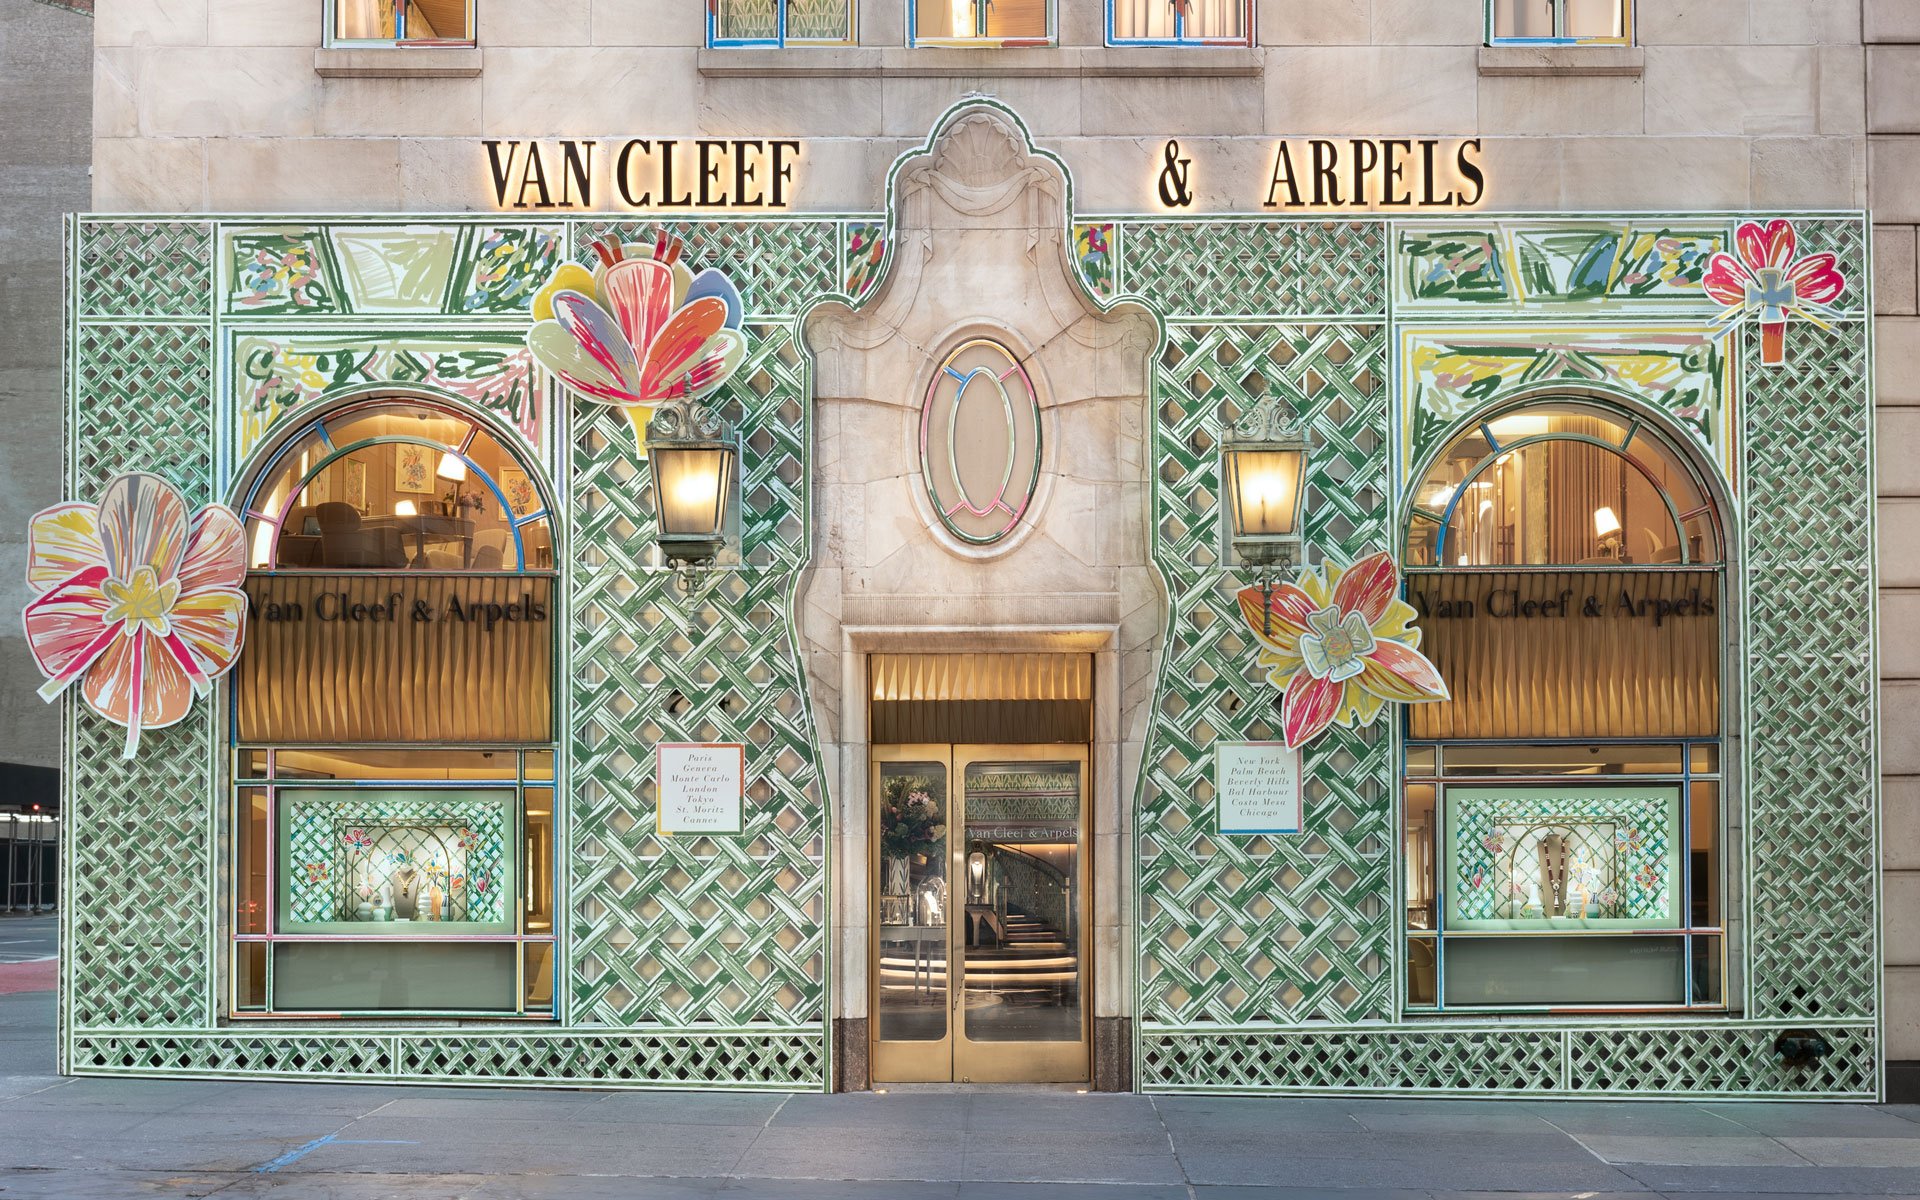 Fifth Avenue Blooms imagined by Van Cleef & Arpels - Van Cleef & Arpels